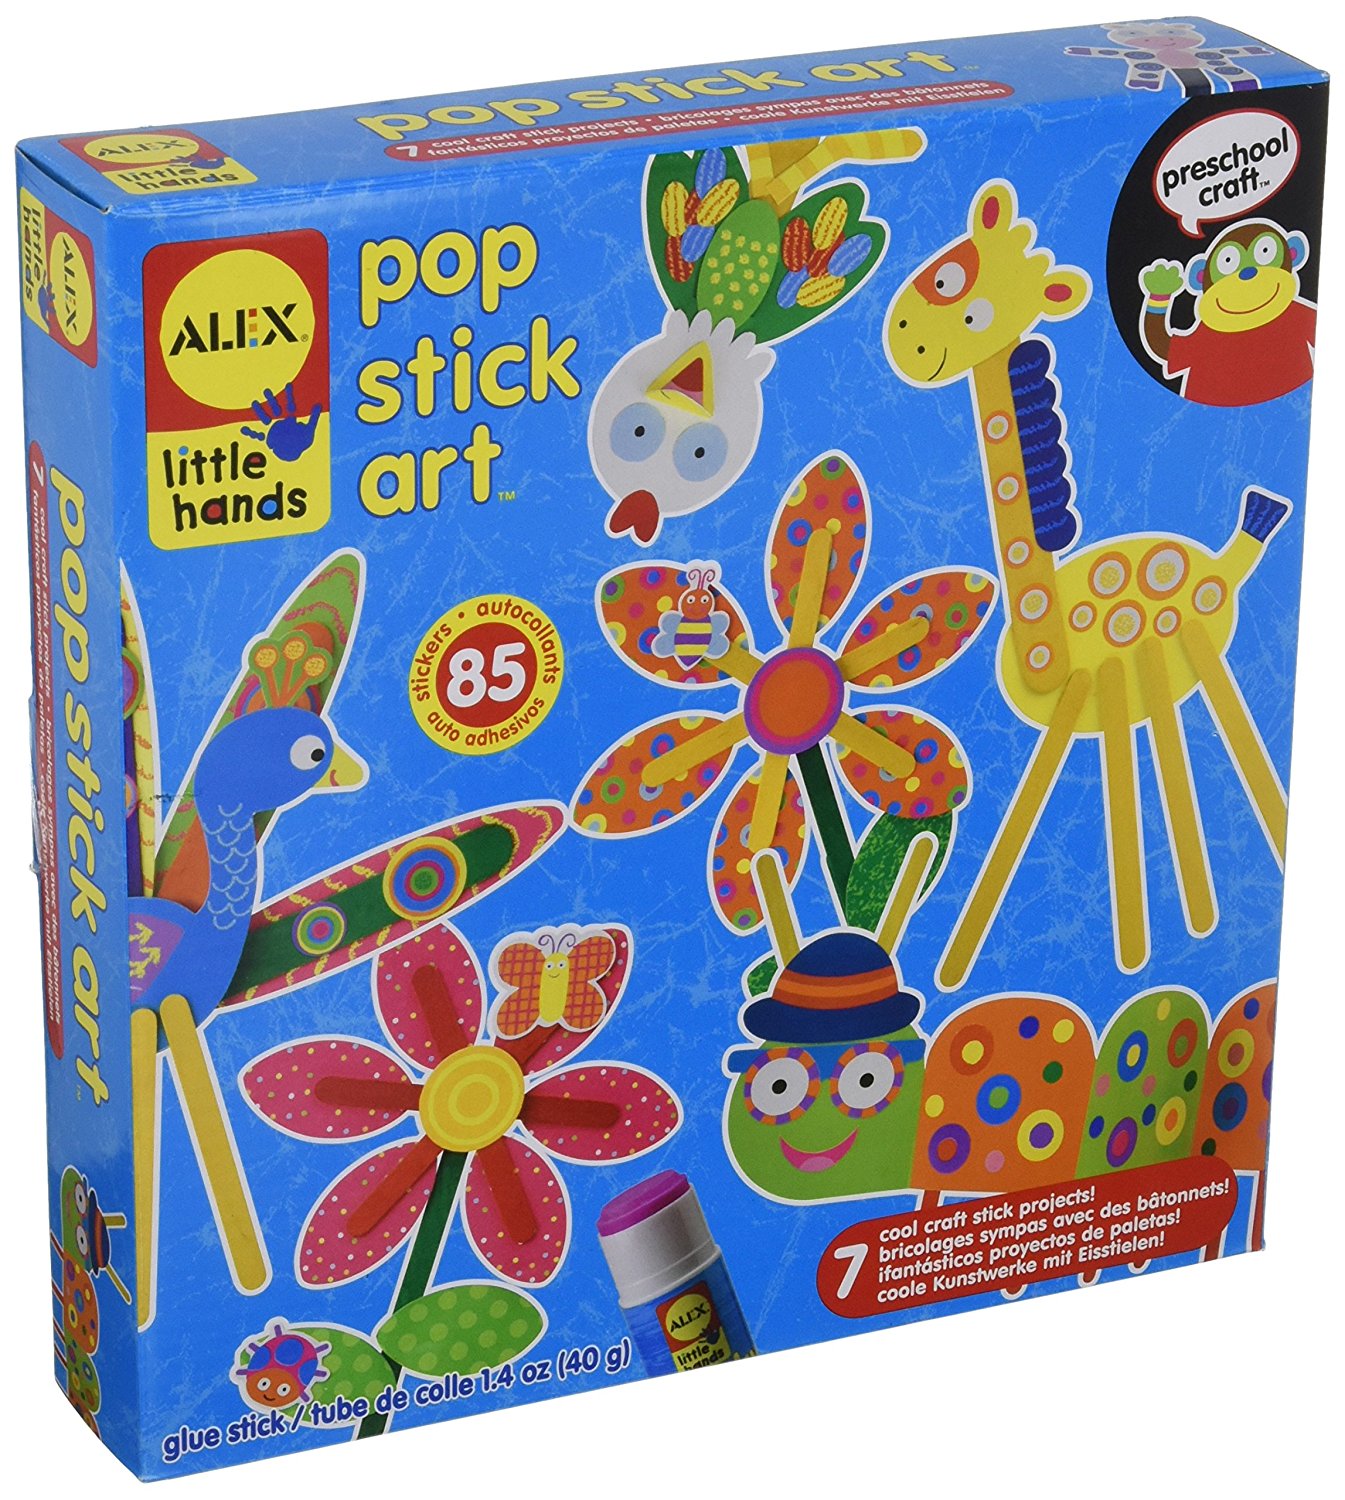 ALEX Toys Little Hands Pop Stick Art